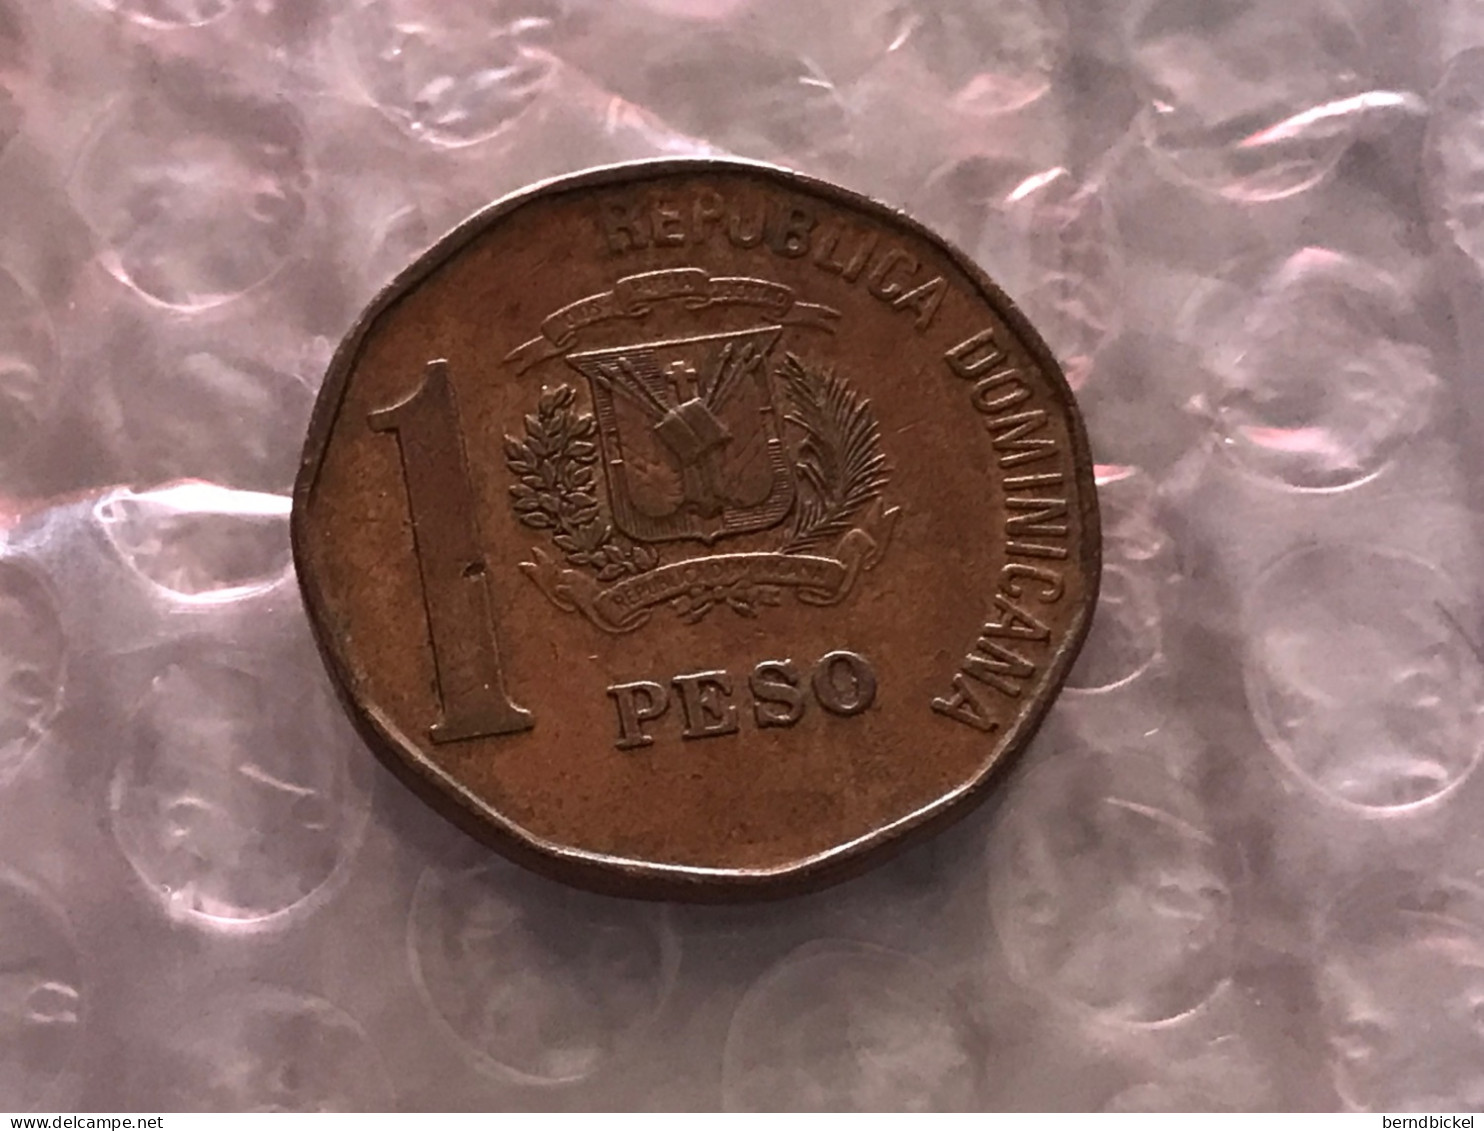 Münze Münzen Umlaufmünze Dominikanische Republik 1 Peso 1992 - Dominicaanse Republiek